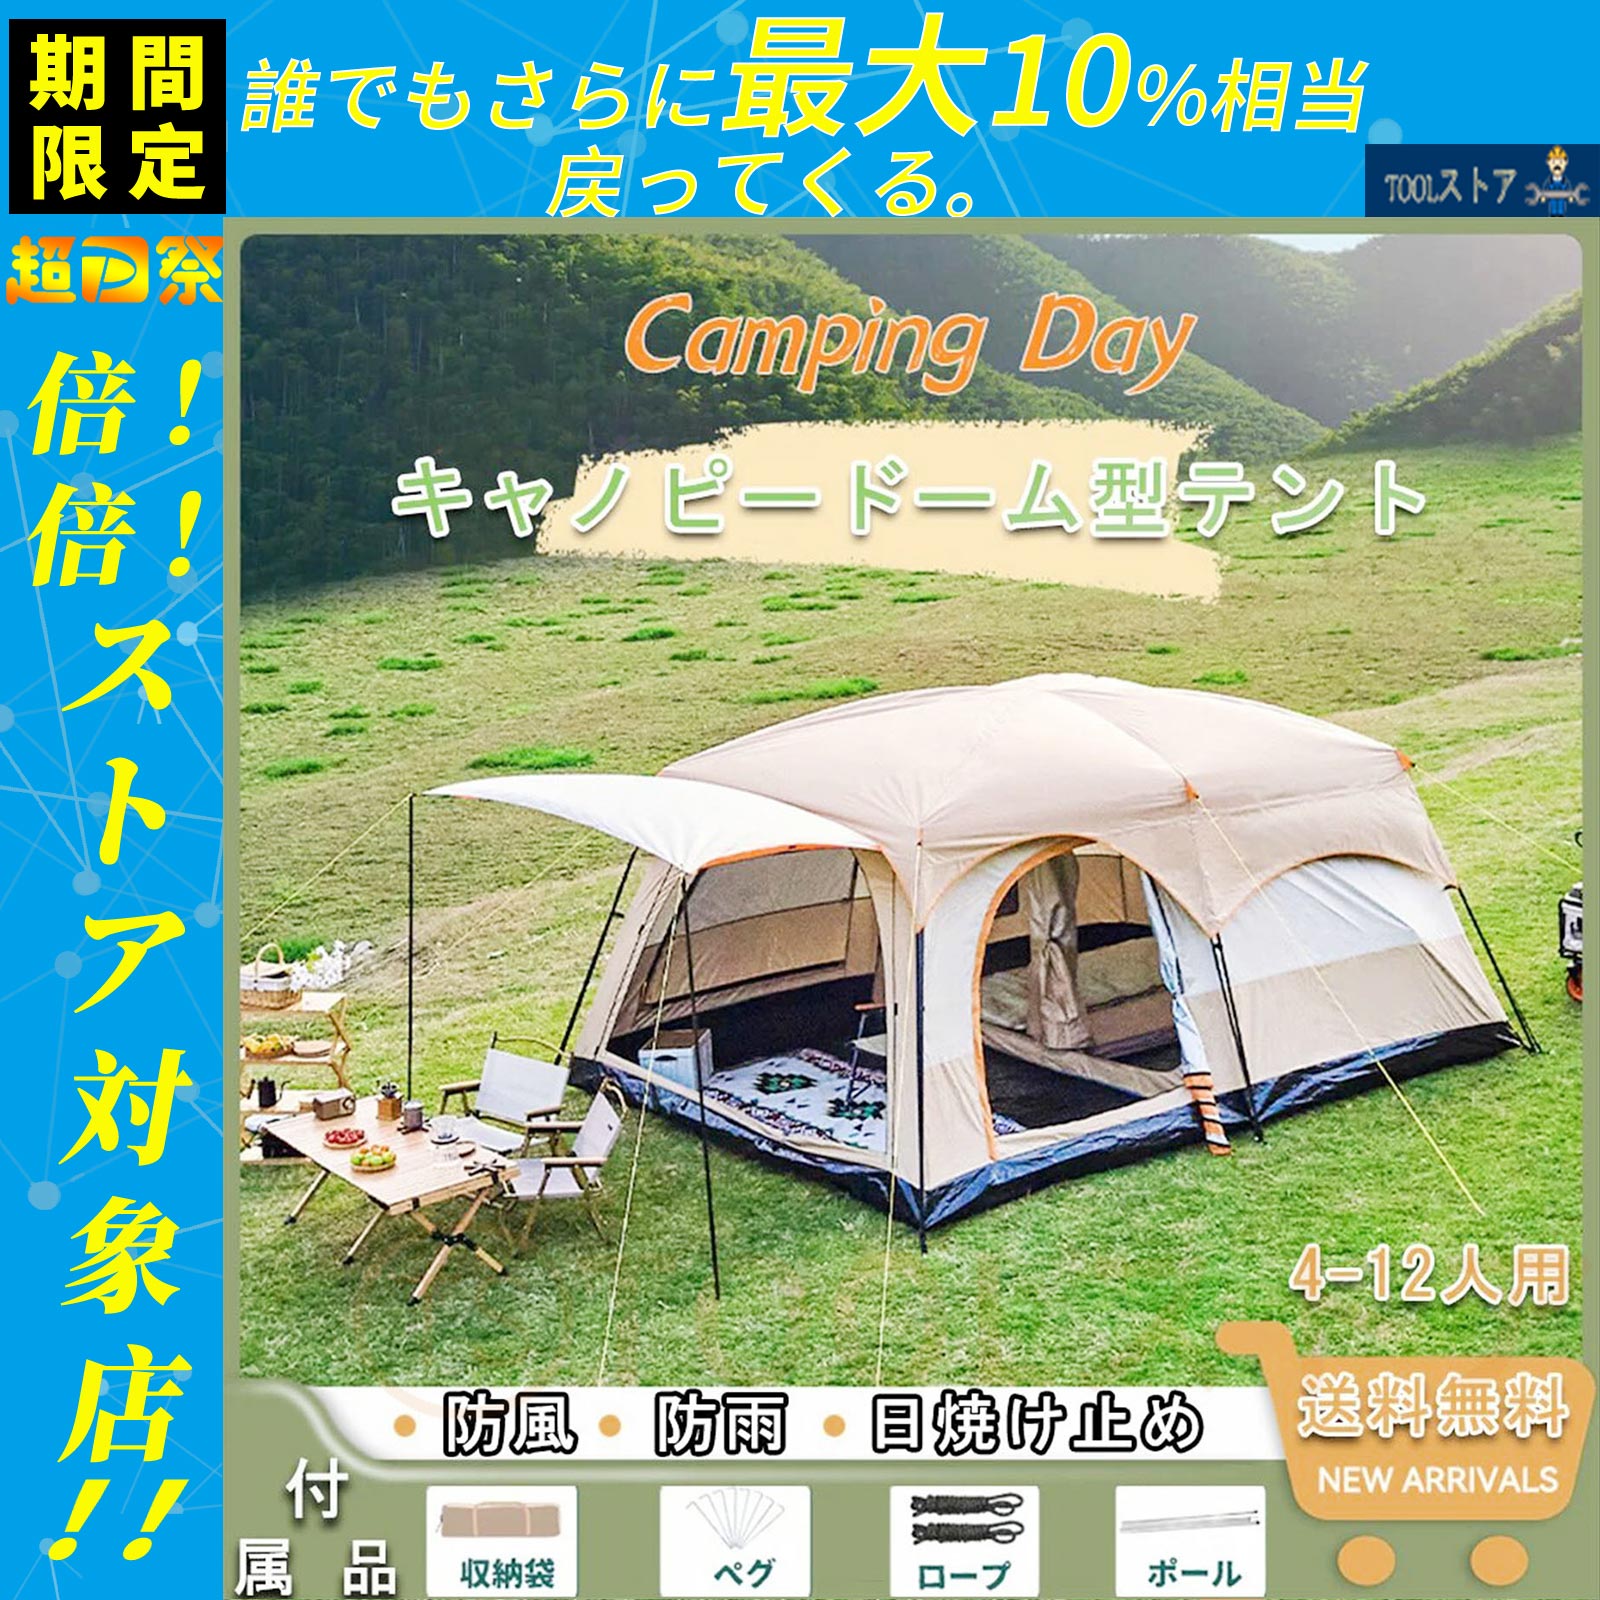 テント キャンプ ワンタッチテン 大型サンシェード 4-12人用